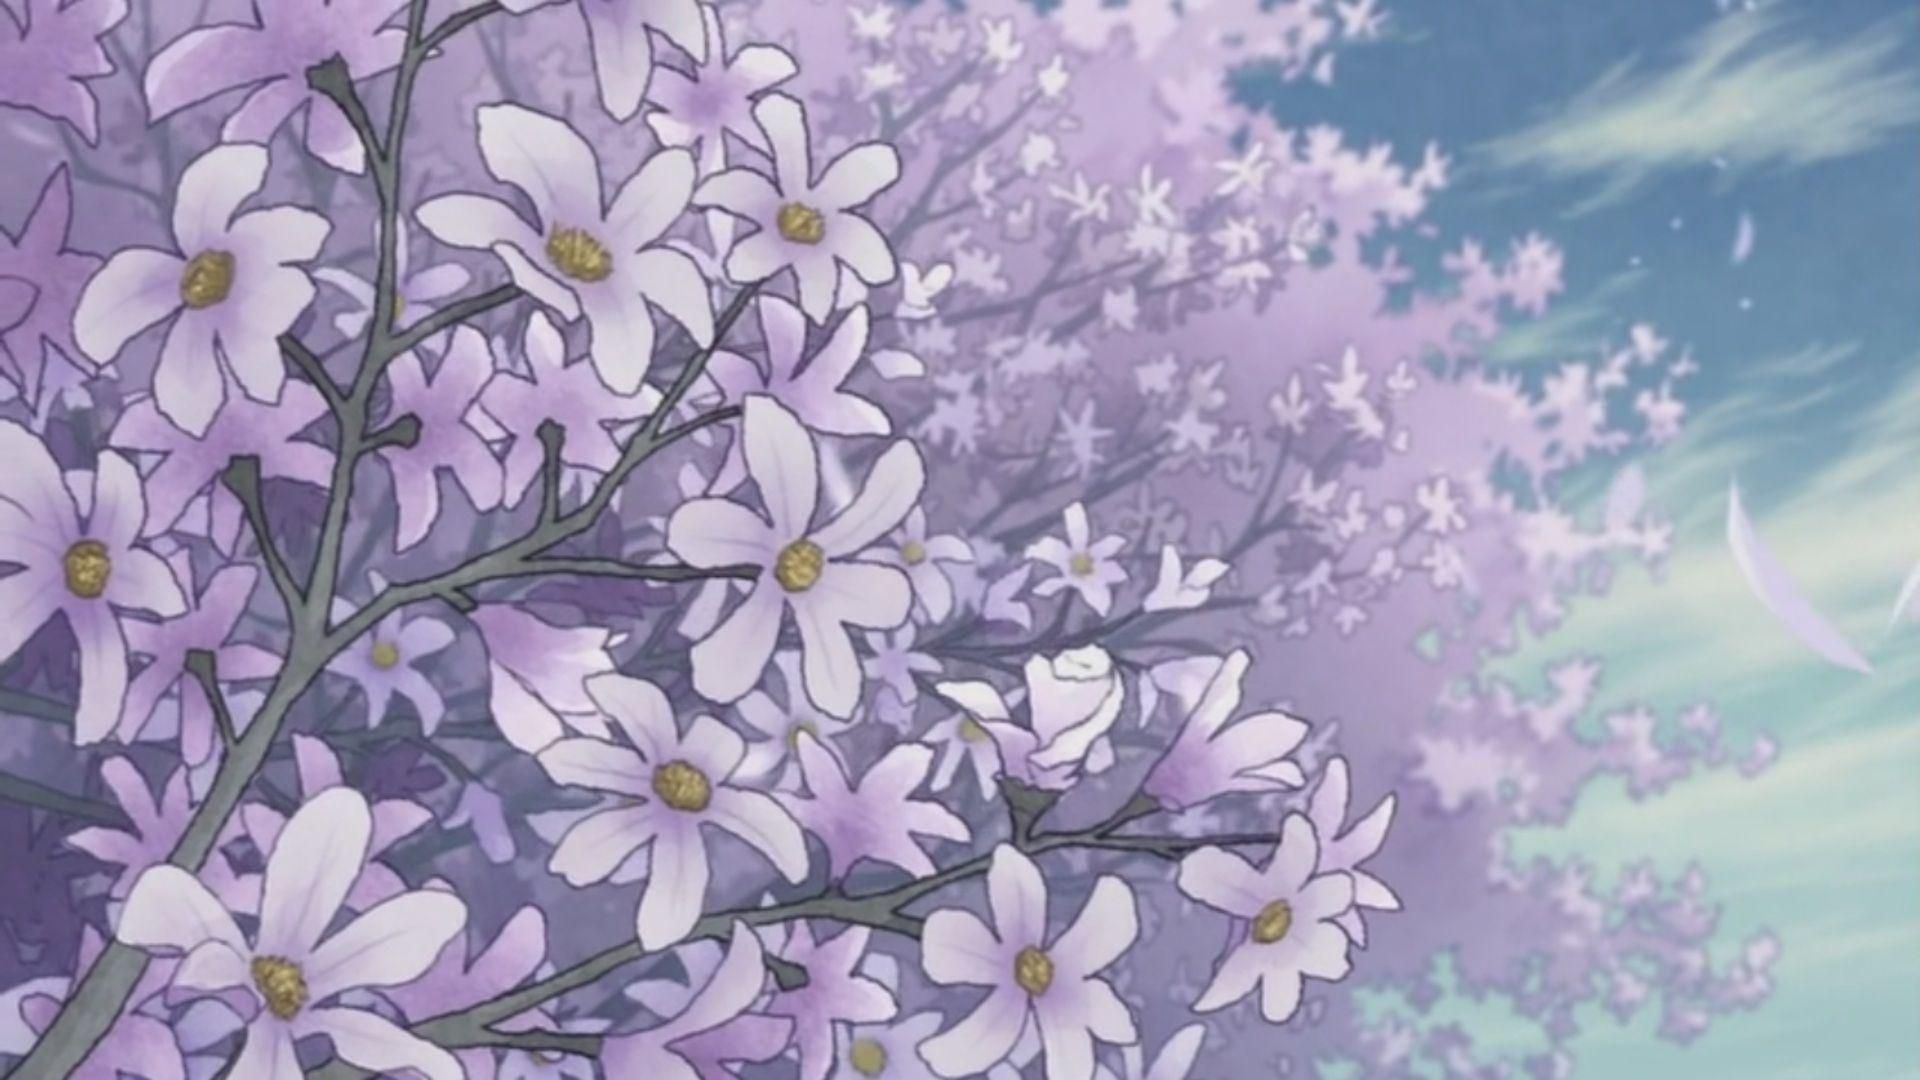 Anime Aesthetic Wallpaper. Plant aesthetic, Android wallpaper anime, Anime scenery wallpaper